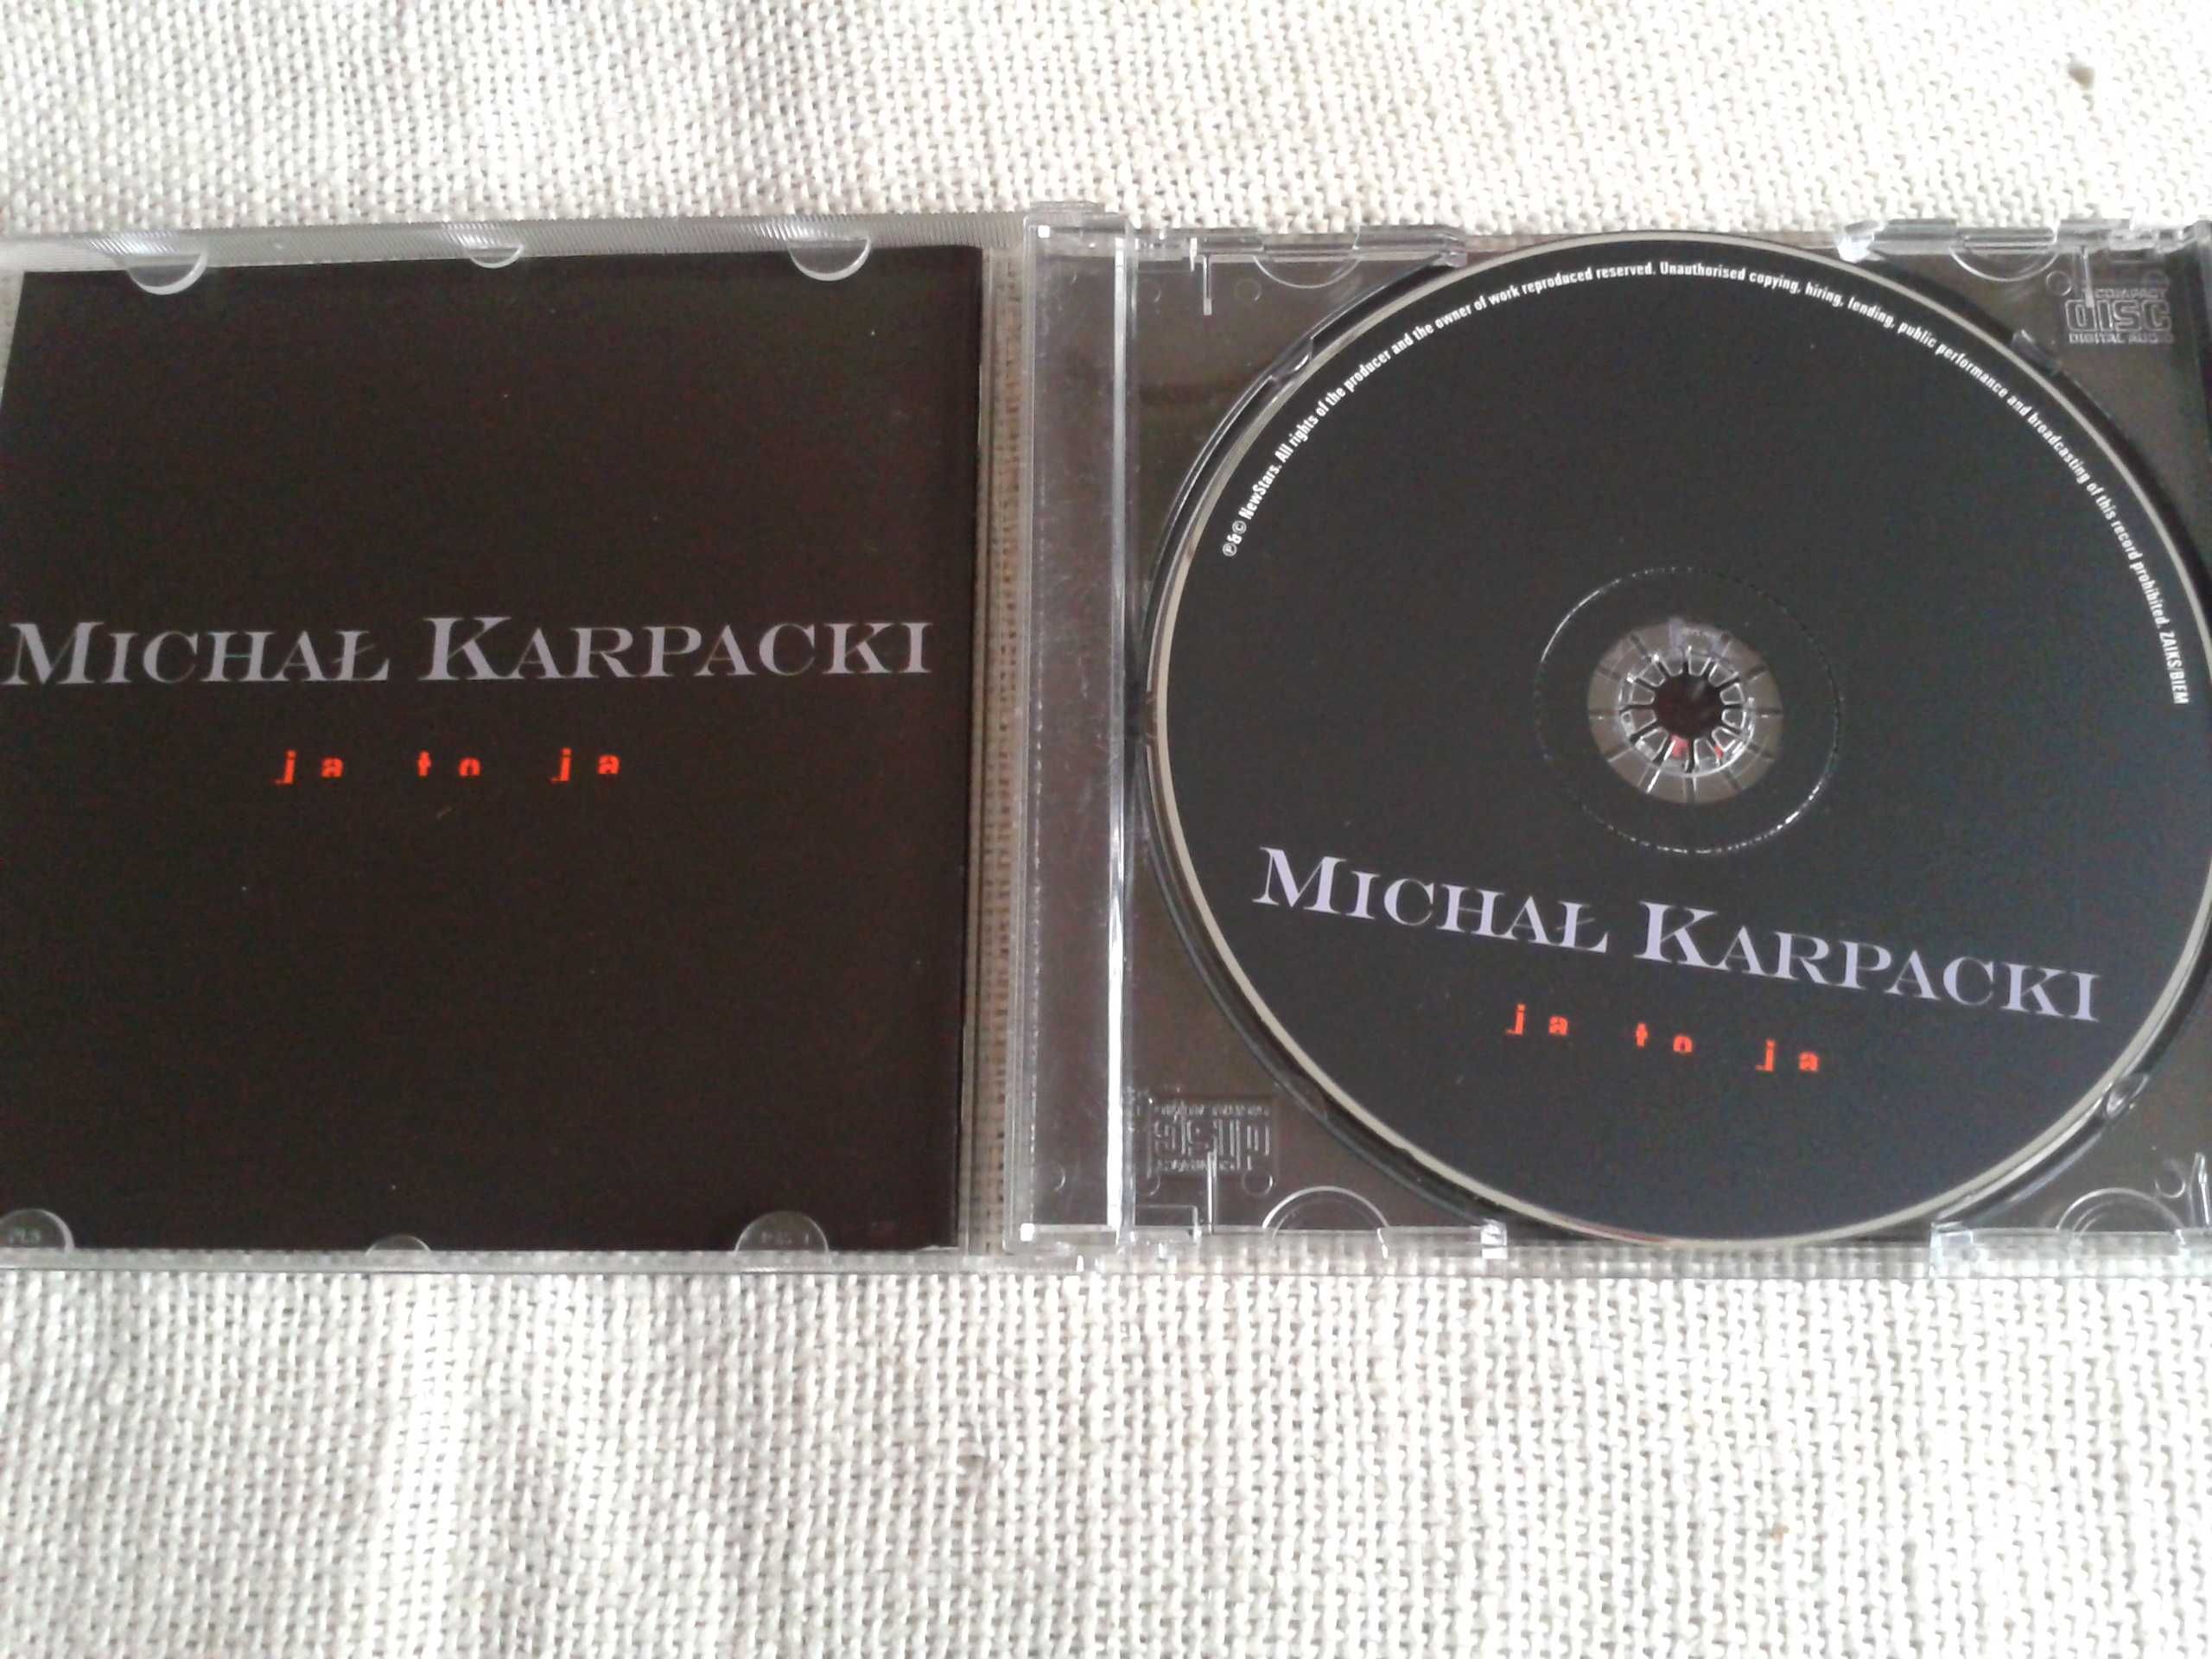 Michał Karpacki – Ja To Ja  CD